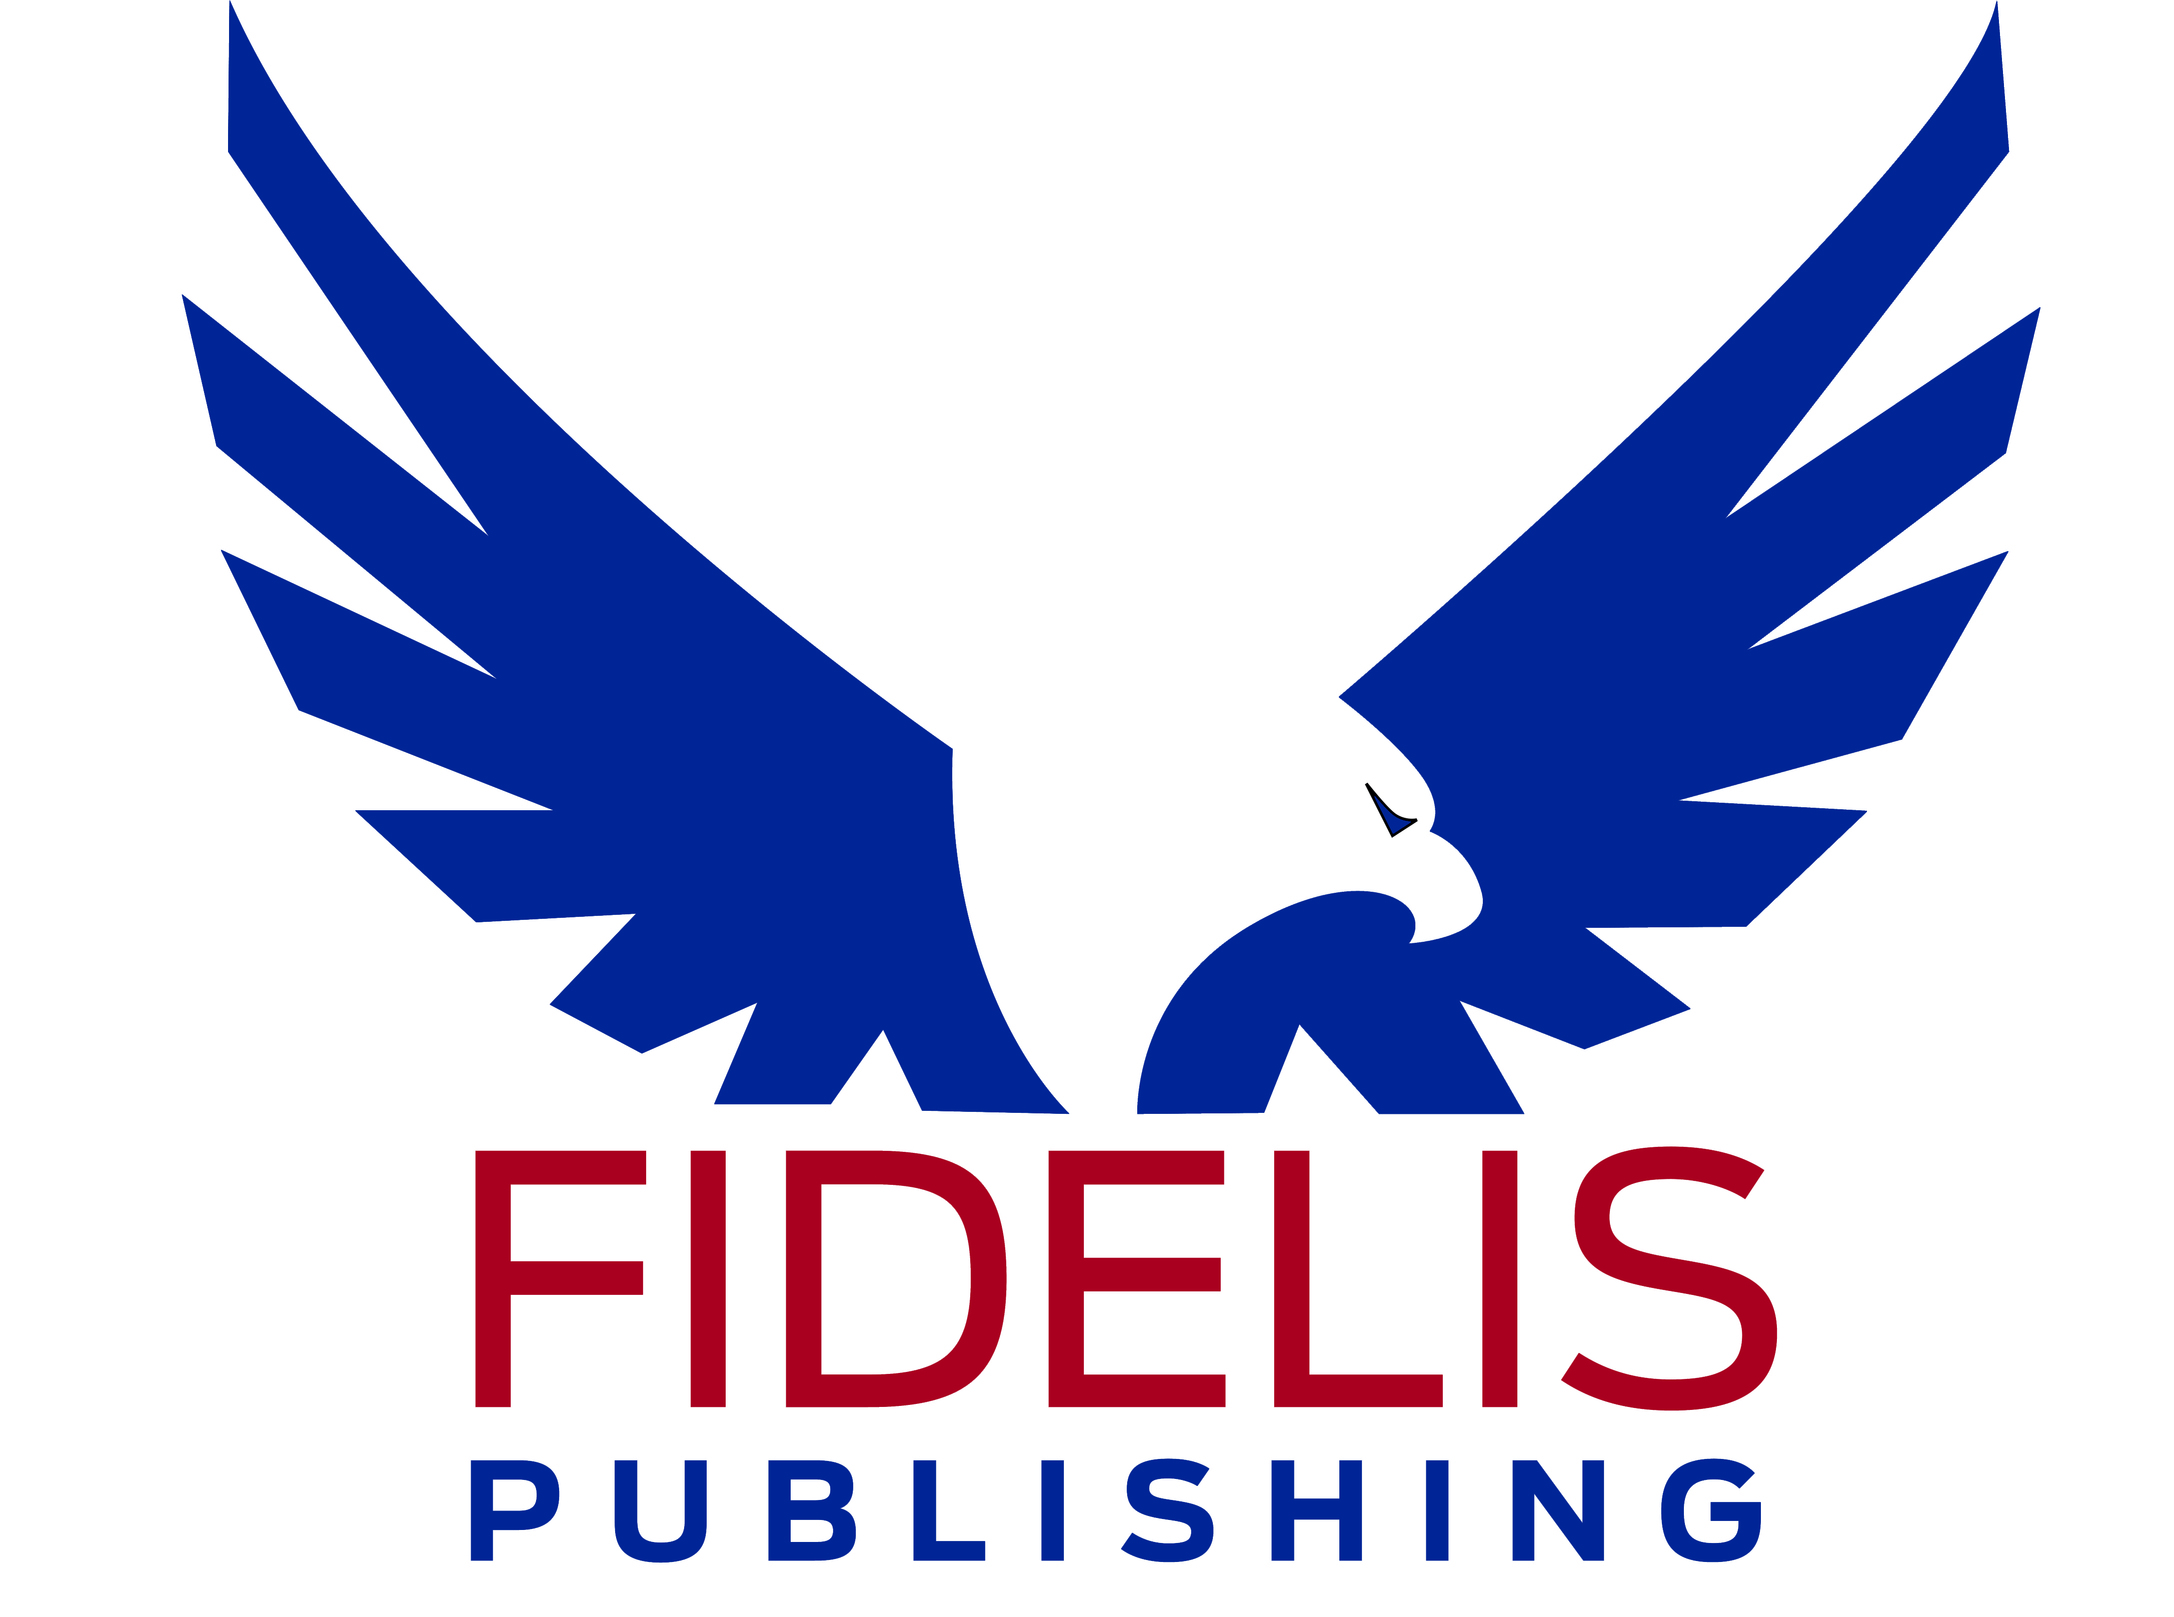 Fidelis Publishing